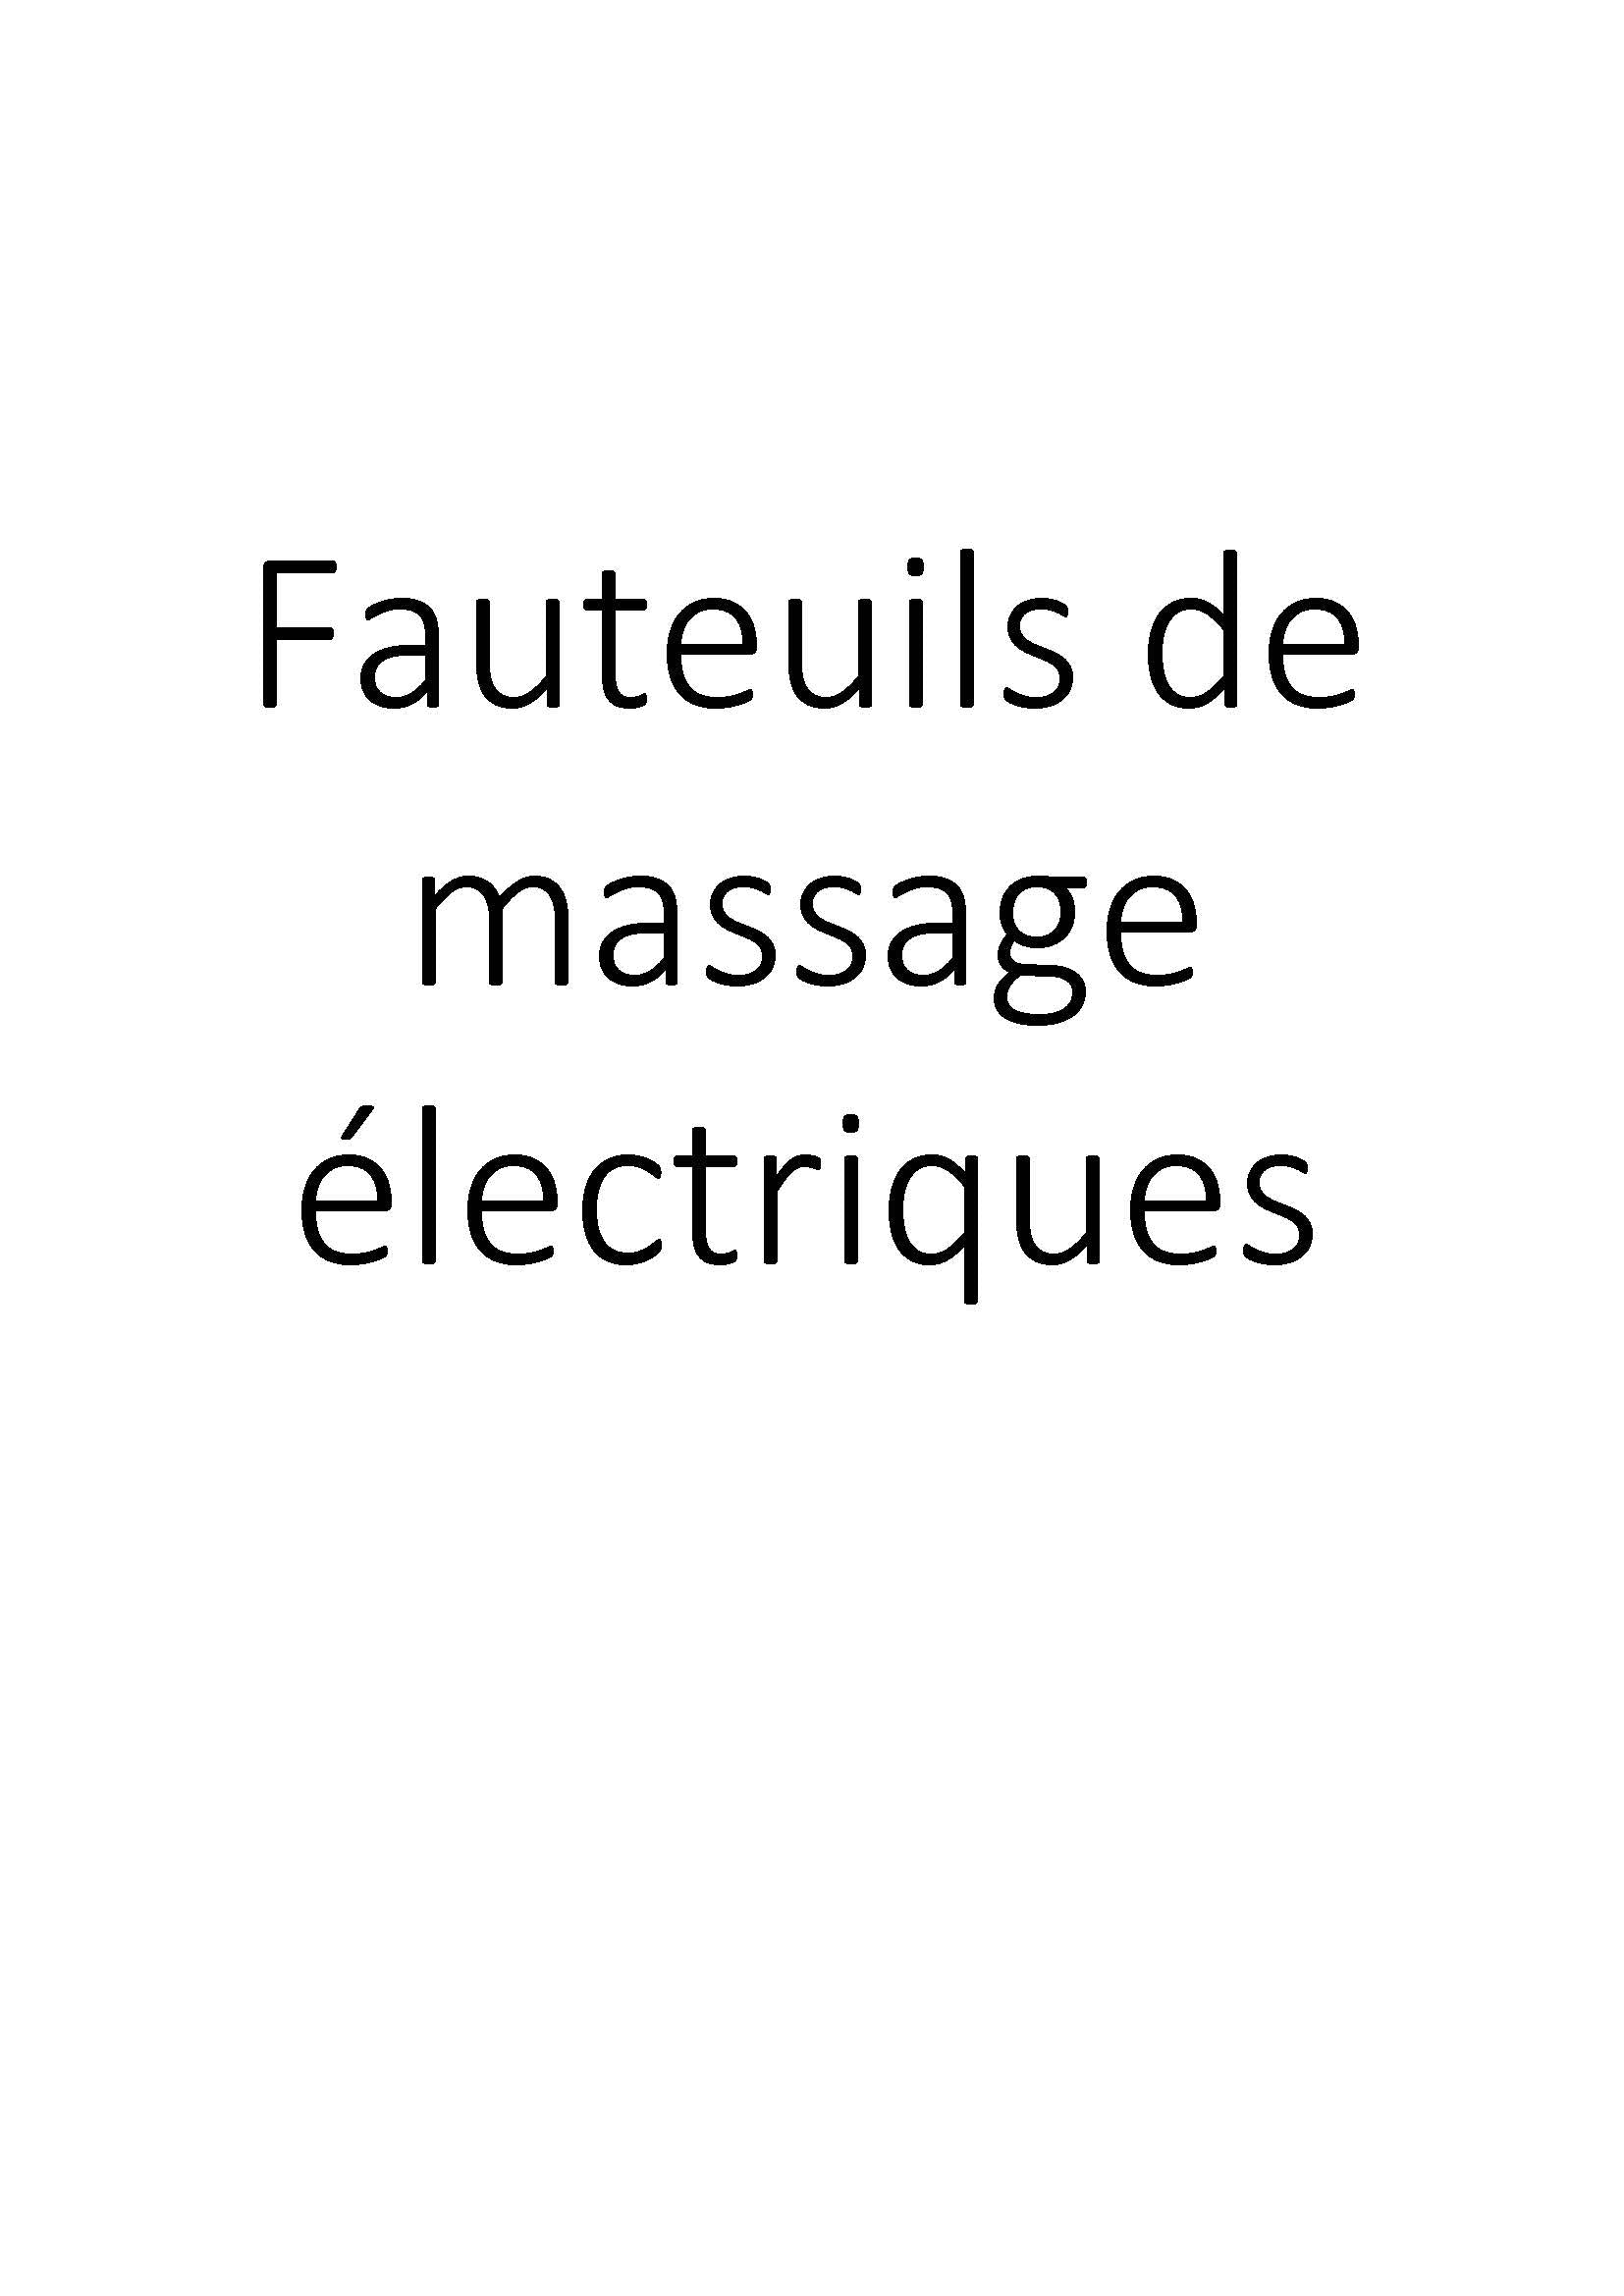 Fauteuils de massage électriques clicktofournisseur.com